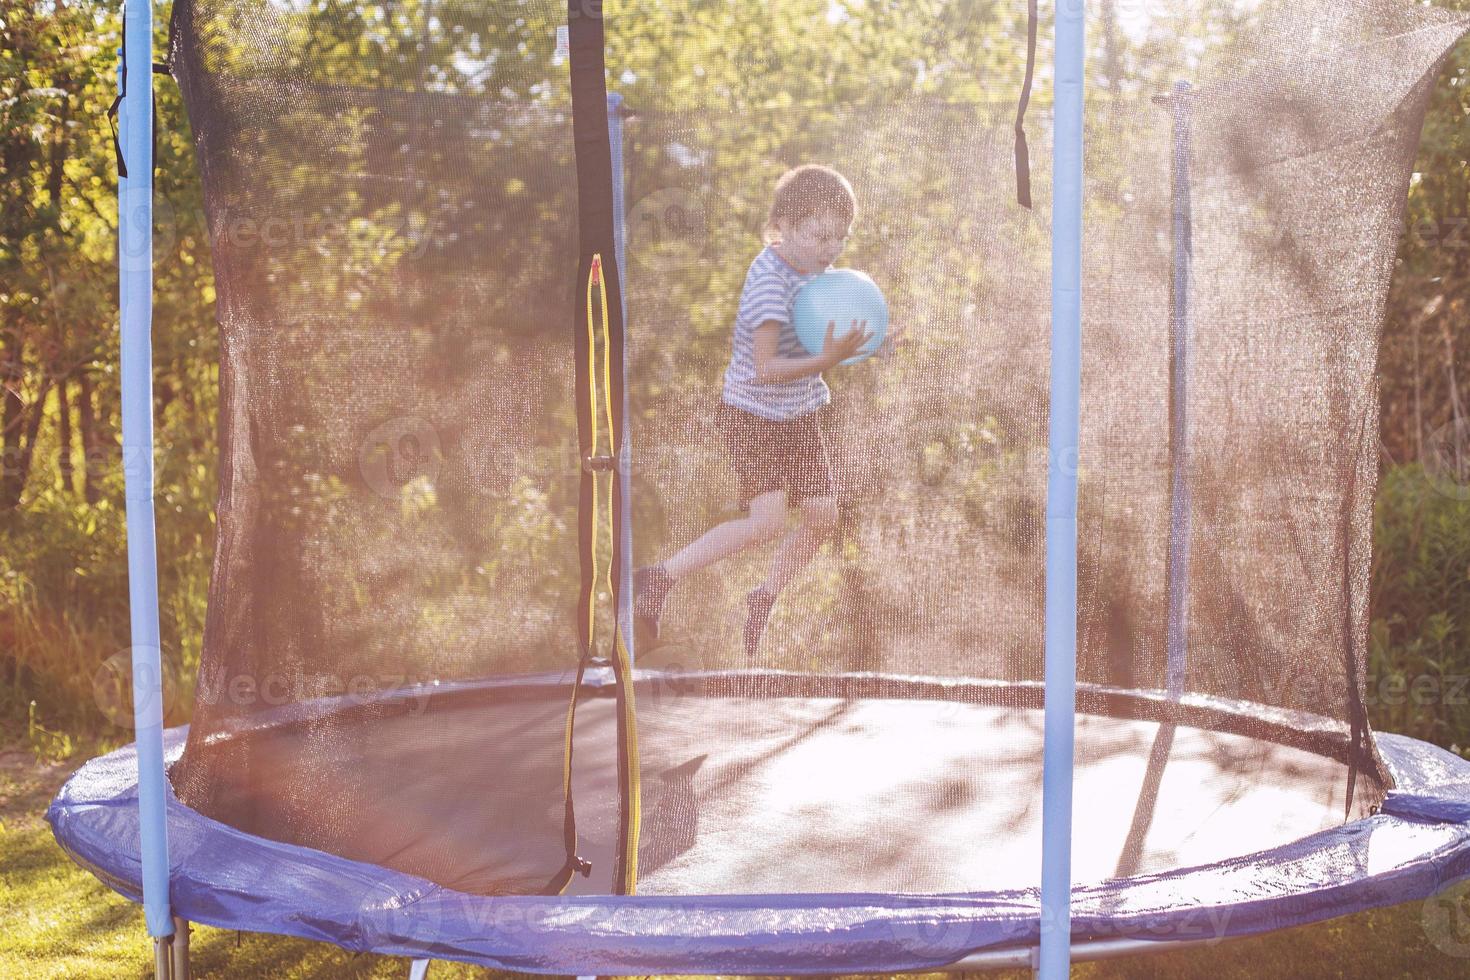 Garoto pulando em trampolim. criança jogando com uma bola em uma trampolim foto